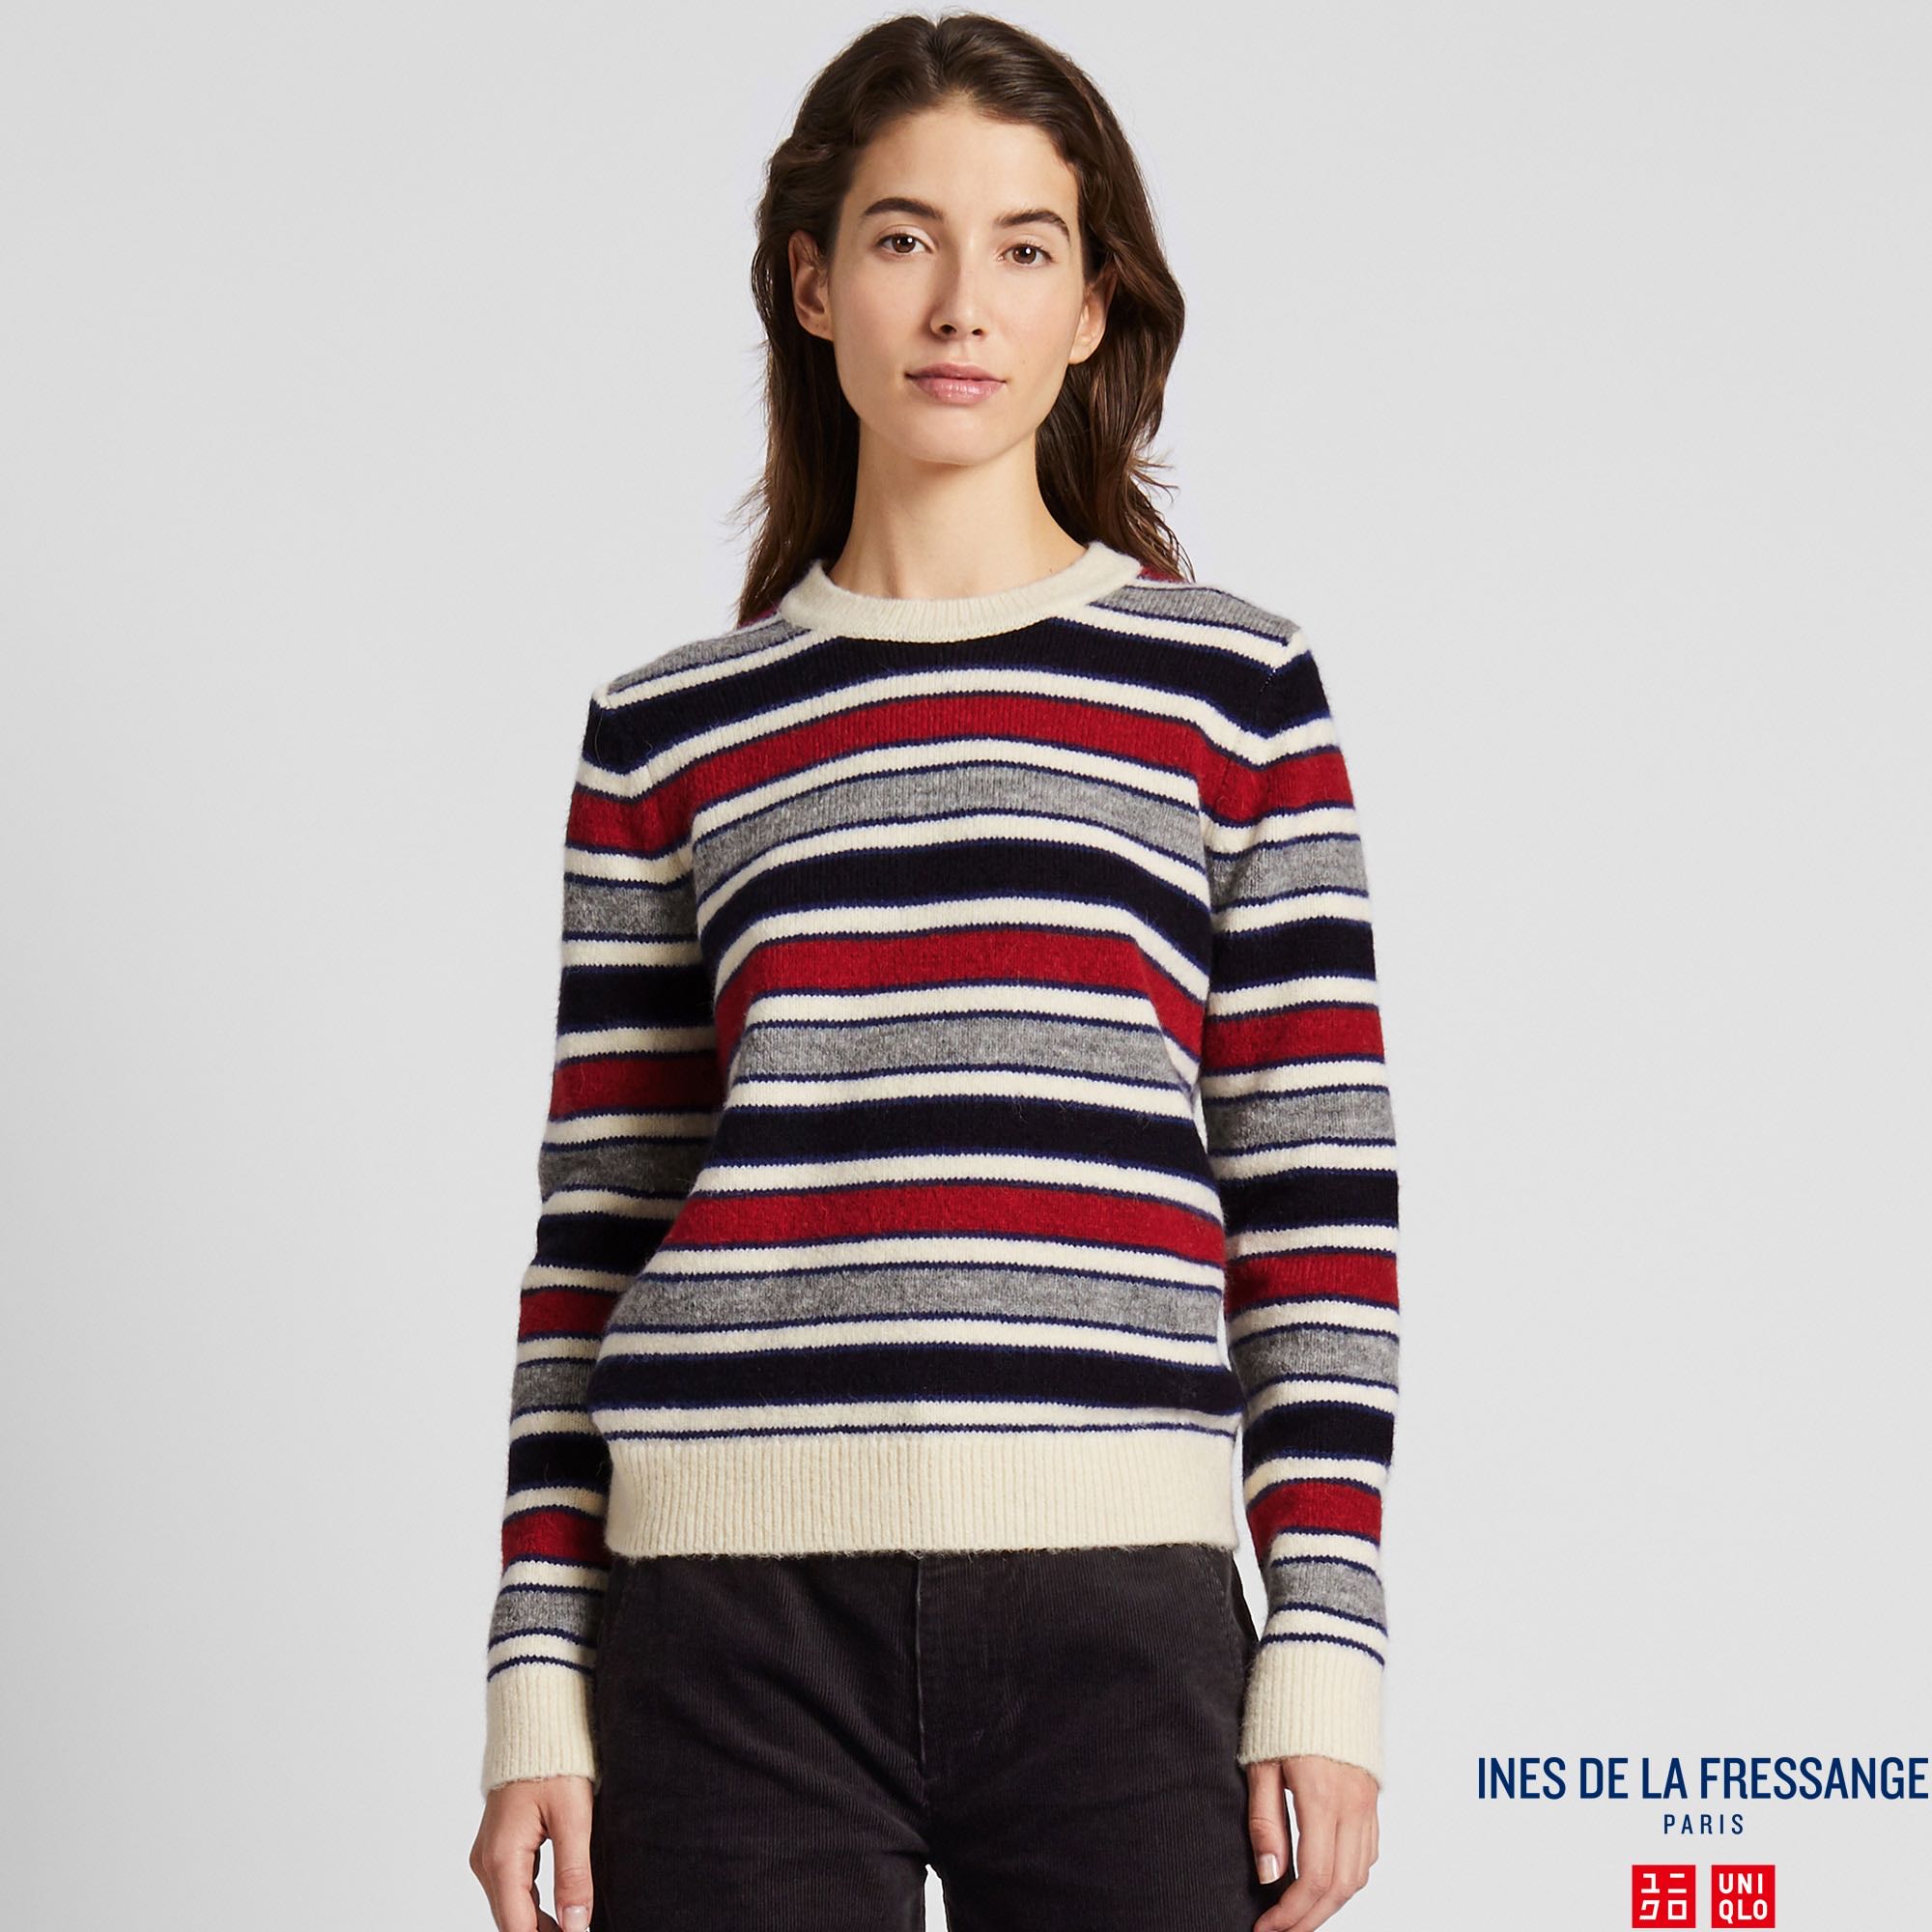 UNIQLO Ines De La Fressange Striped Crew Neck Sweater, Women's Fashion,  Tops, Longsleeves on Carousell